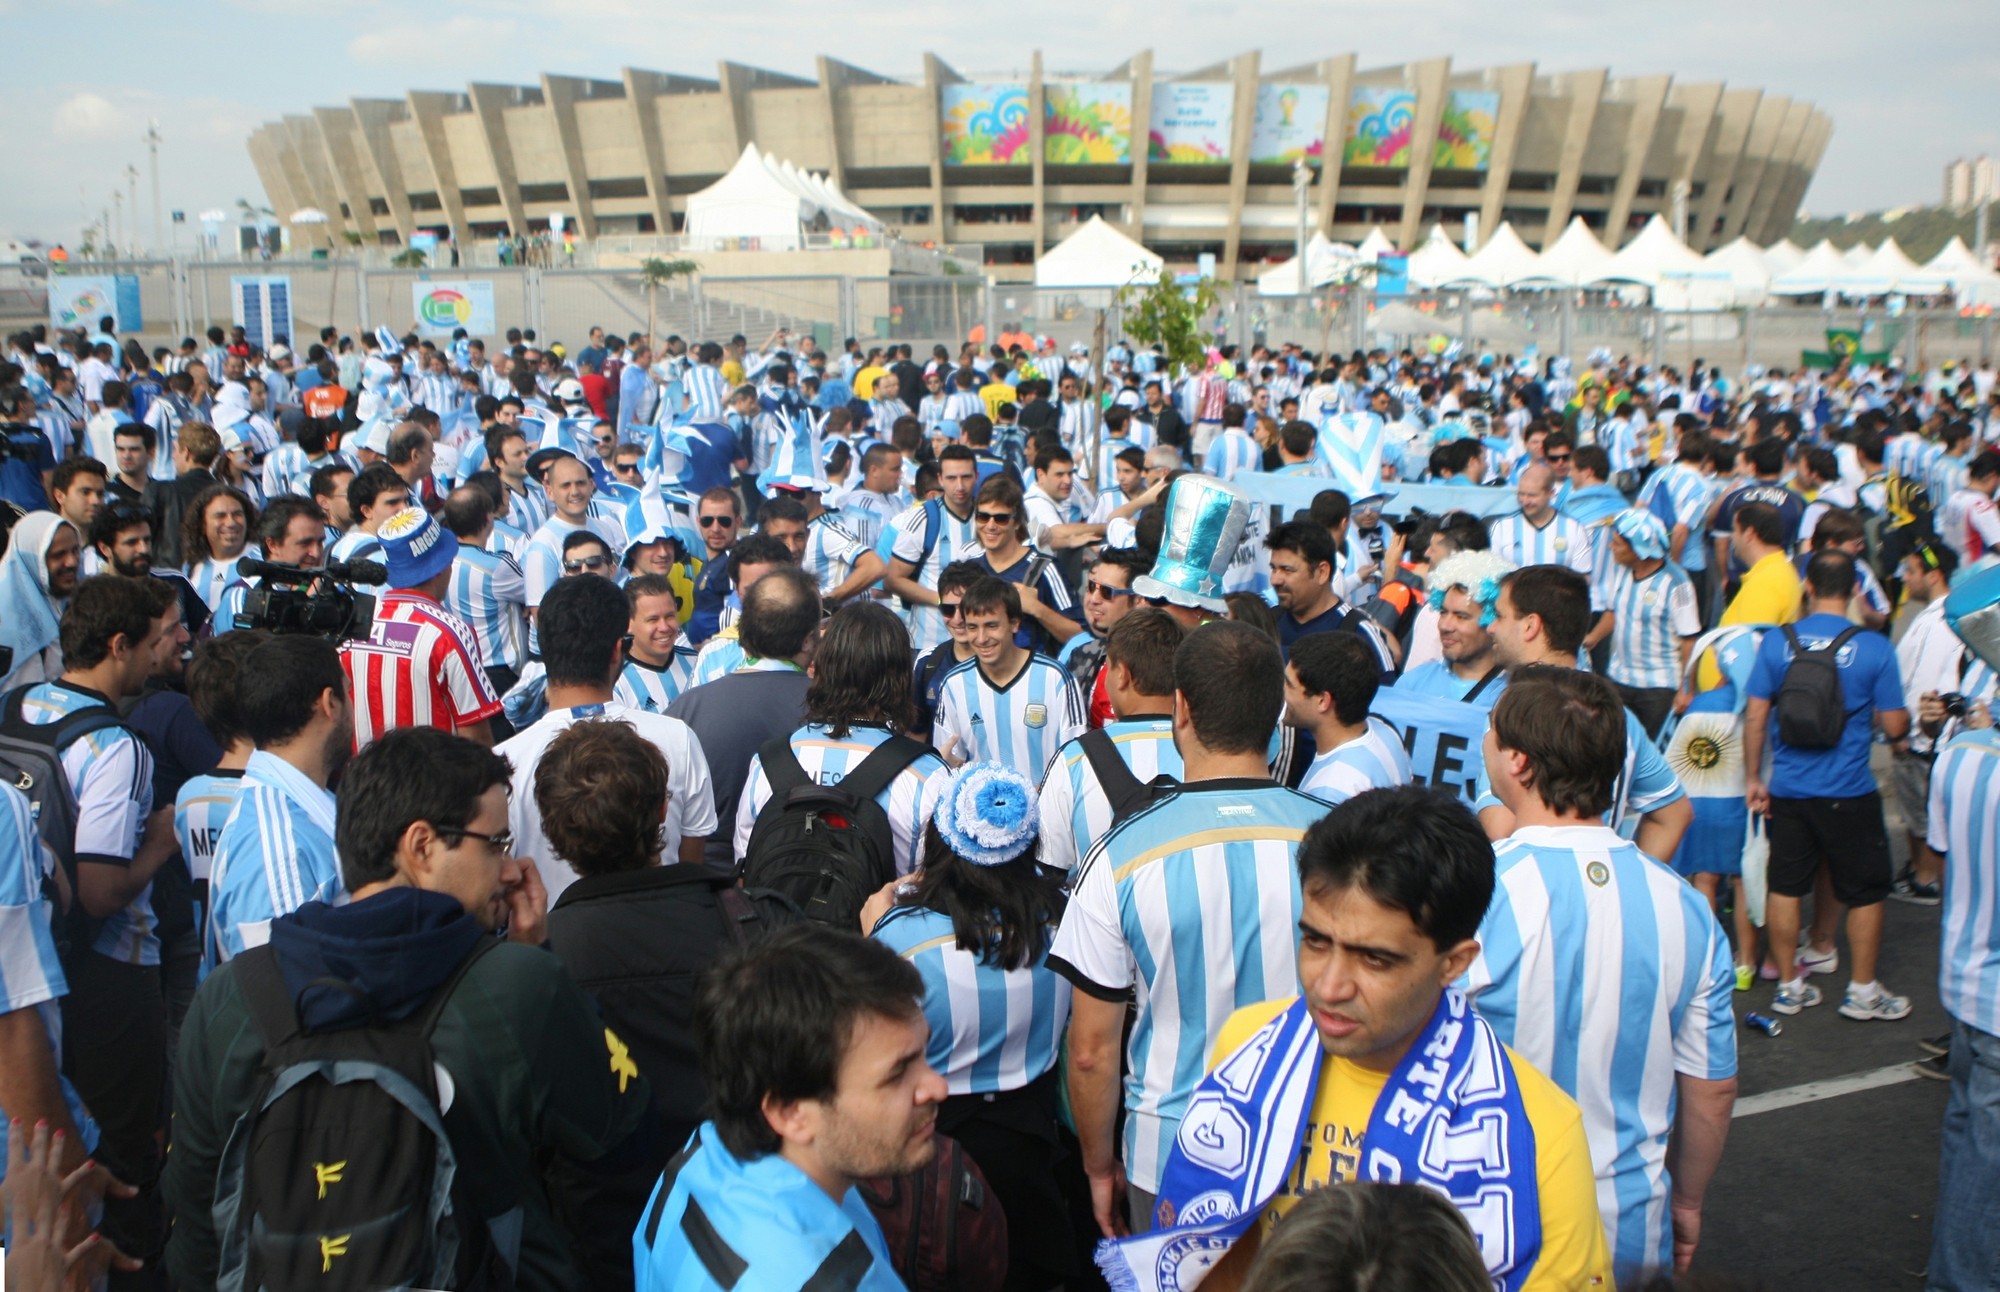 Torcida da Argentina chega para jogo contra o Irã pelo Grupo F da Copa do Mundo no estádio do Mineirão, em Belo Horizonte, Minas Gerais, neste sábado, 21. (Foto: Leo Fontes/ Estadão Conteúdo)